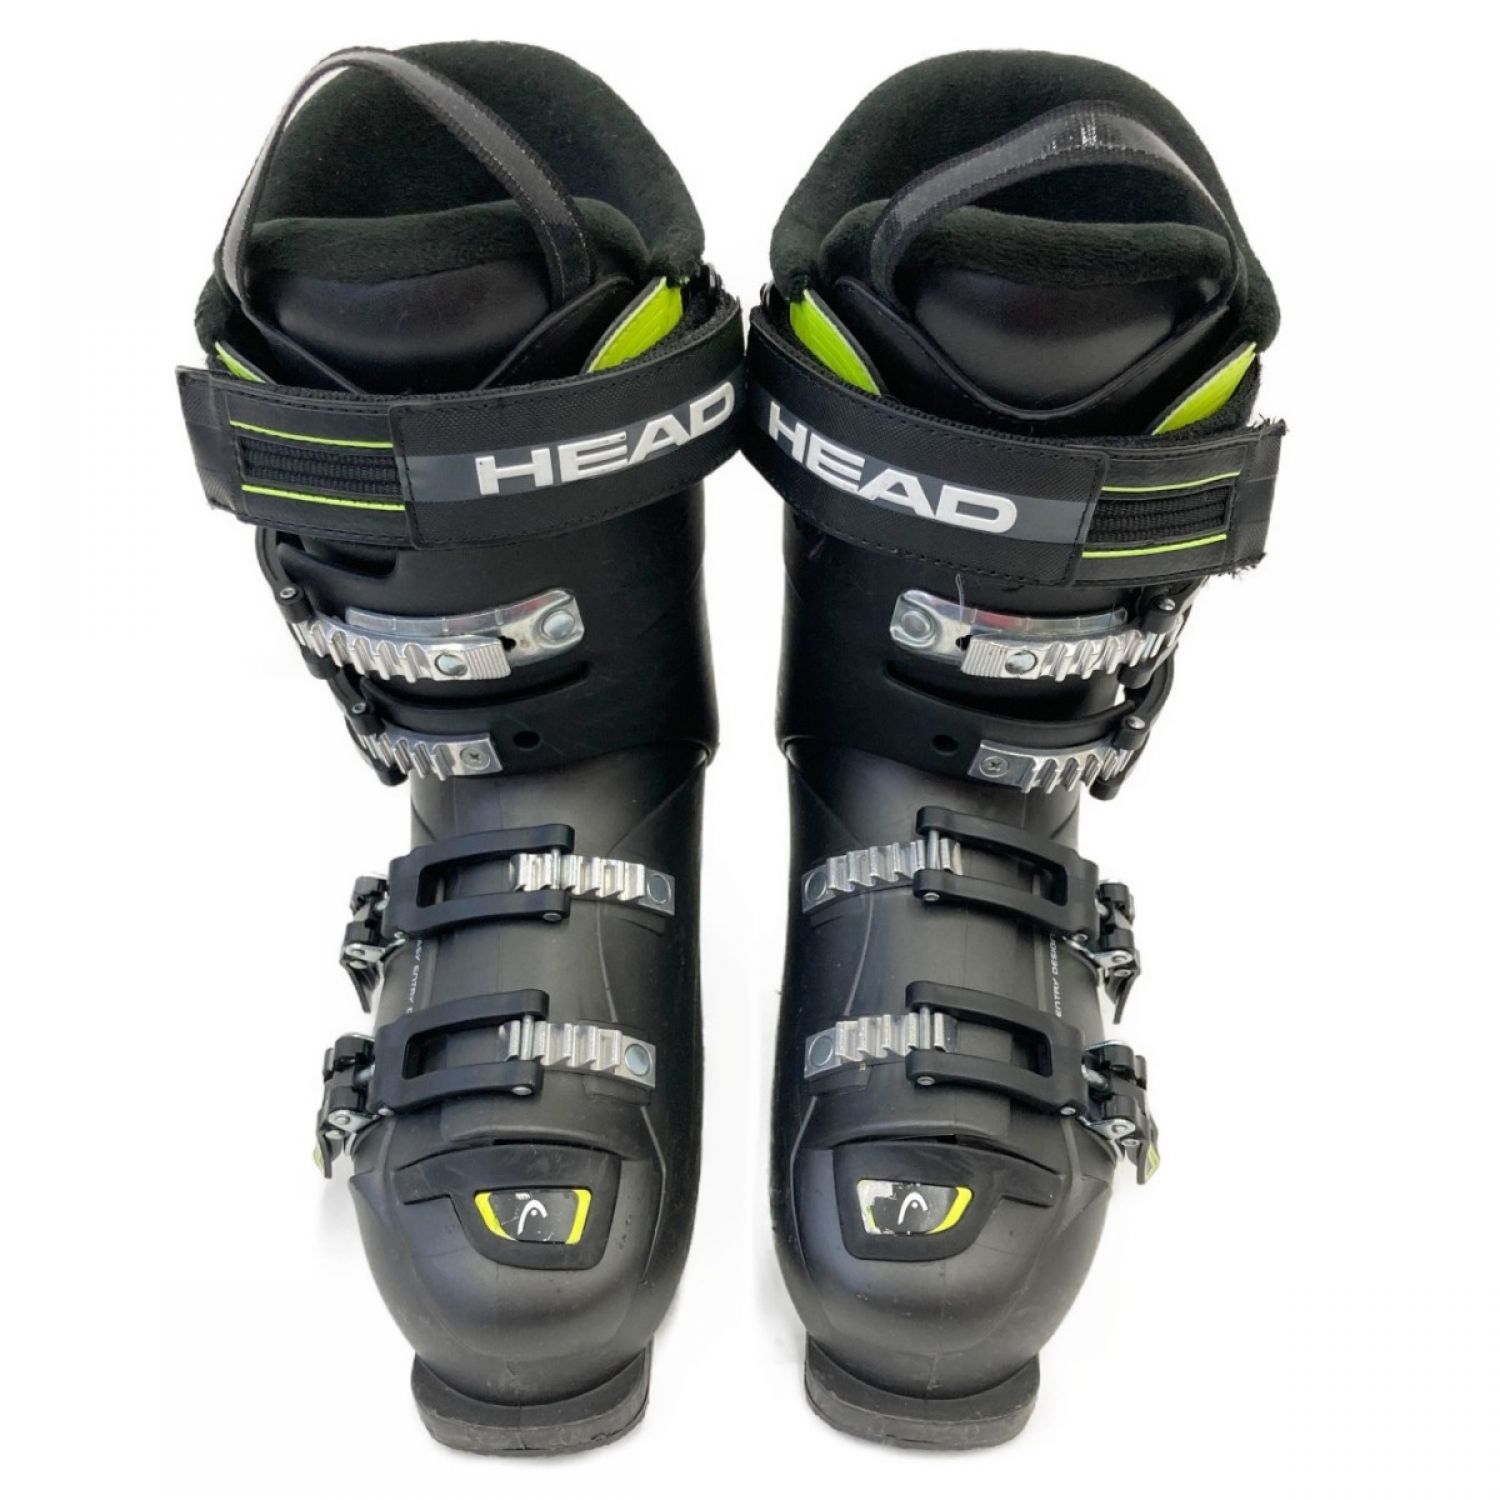 ◆ スキー ブーツ HEAD EDGE NEXT GP 26.5 スキーブーツＢ中古品使用感があるもの